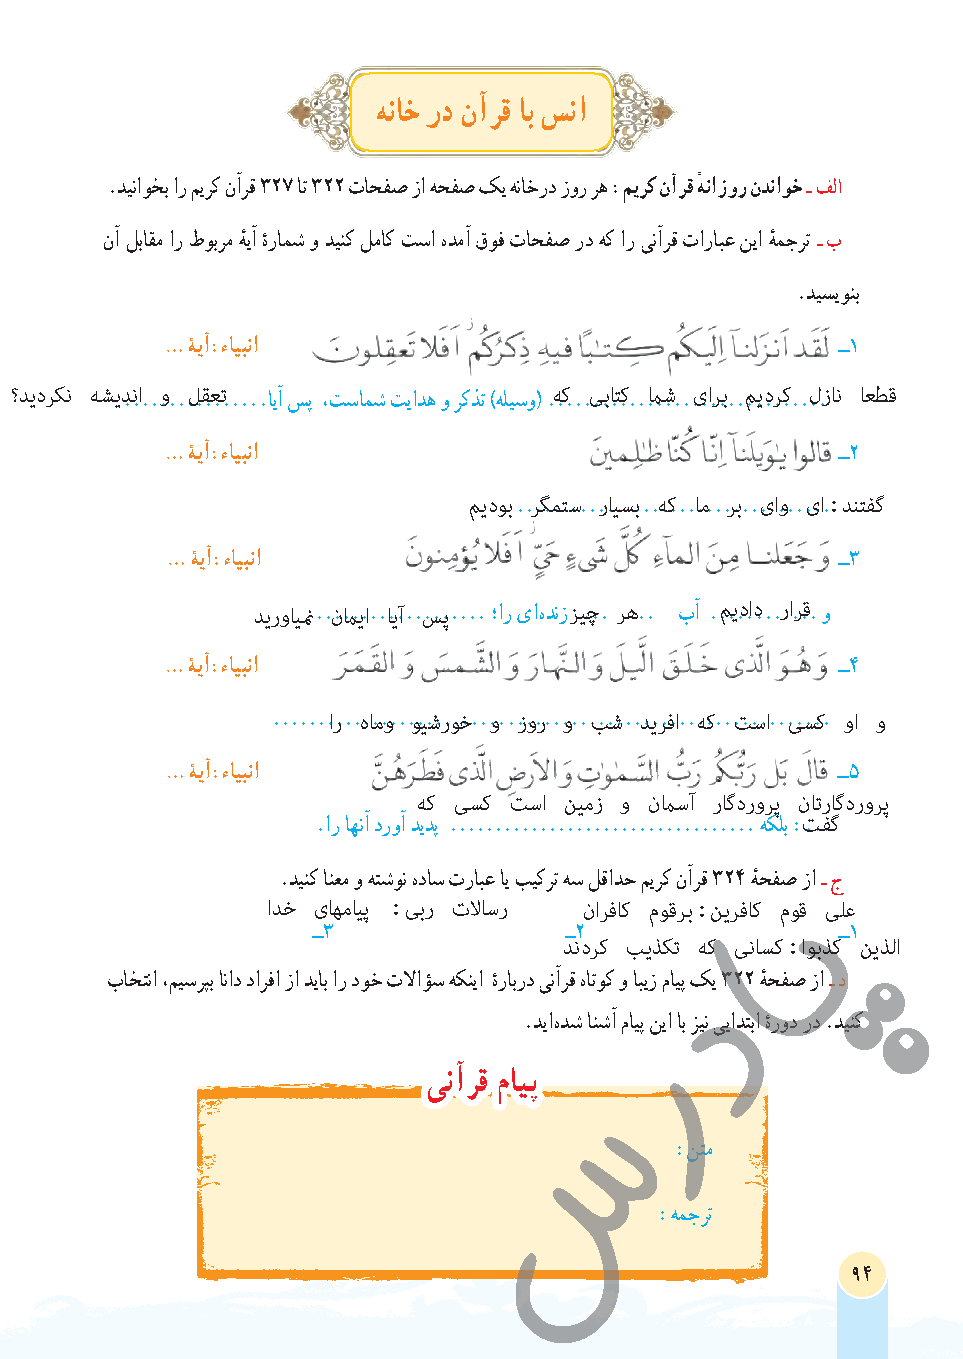 جواب فعالیت سوم درس 10 قرآن هفتم - جلسه دوم